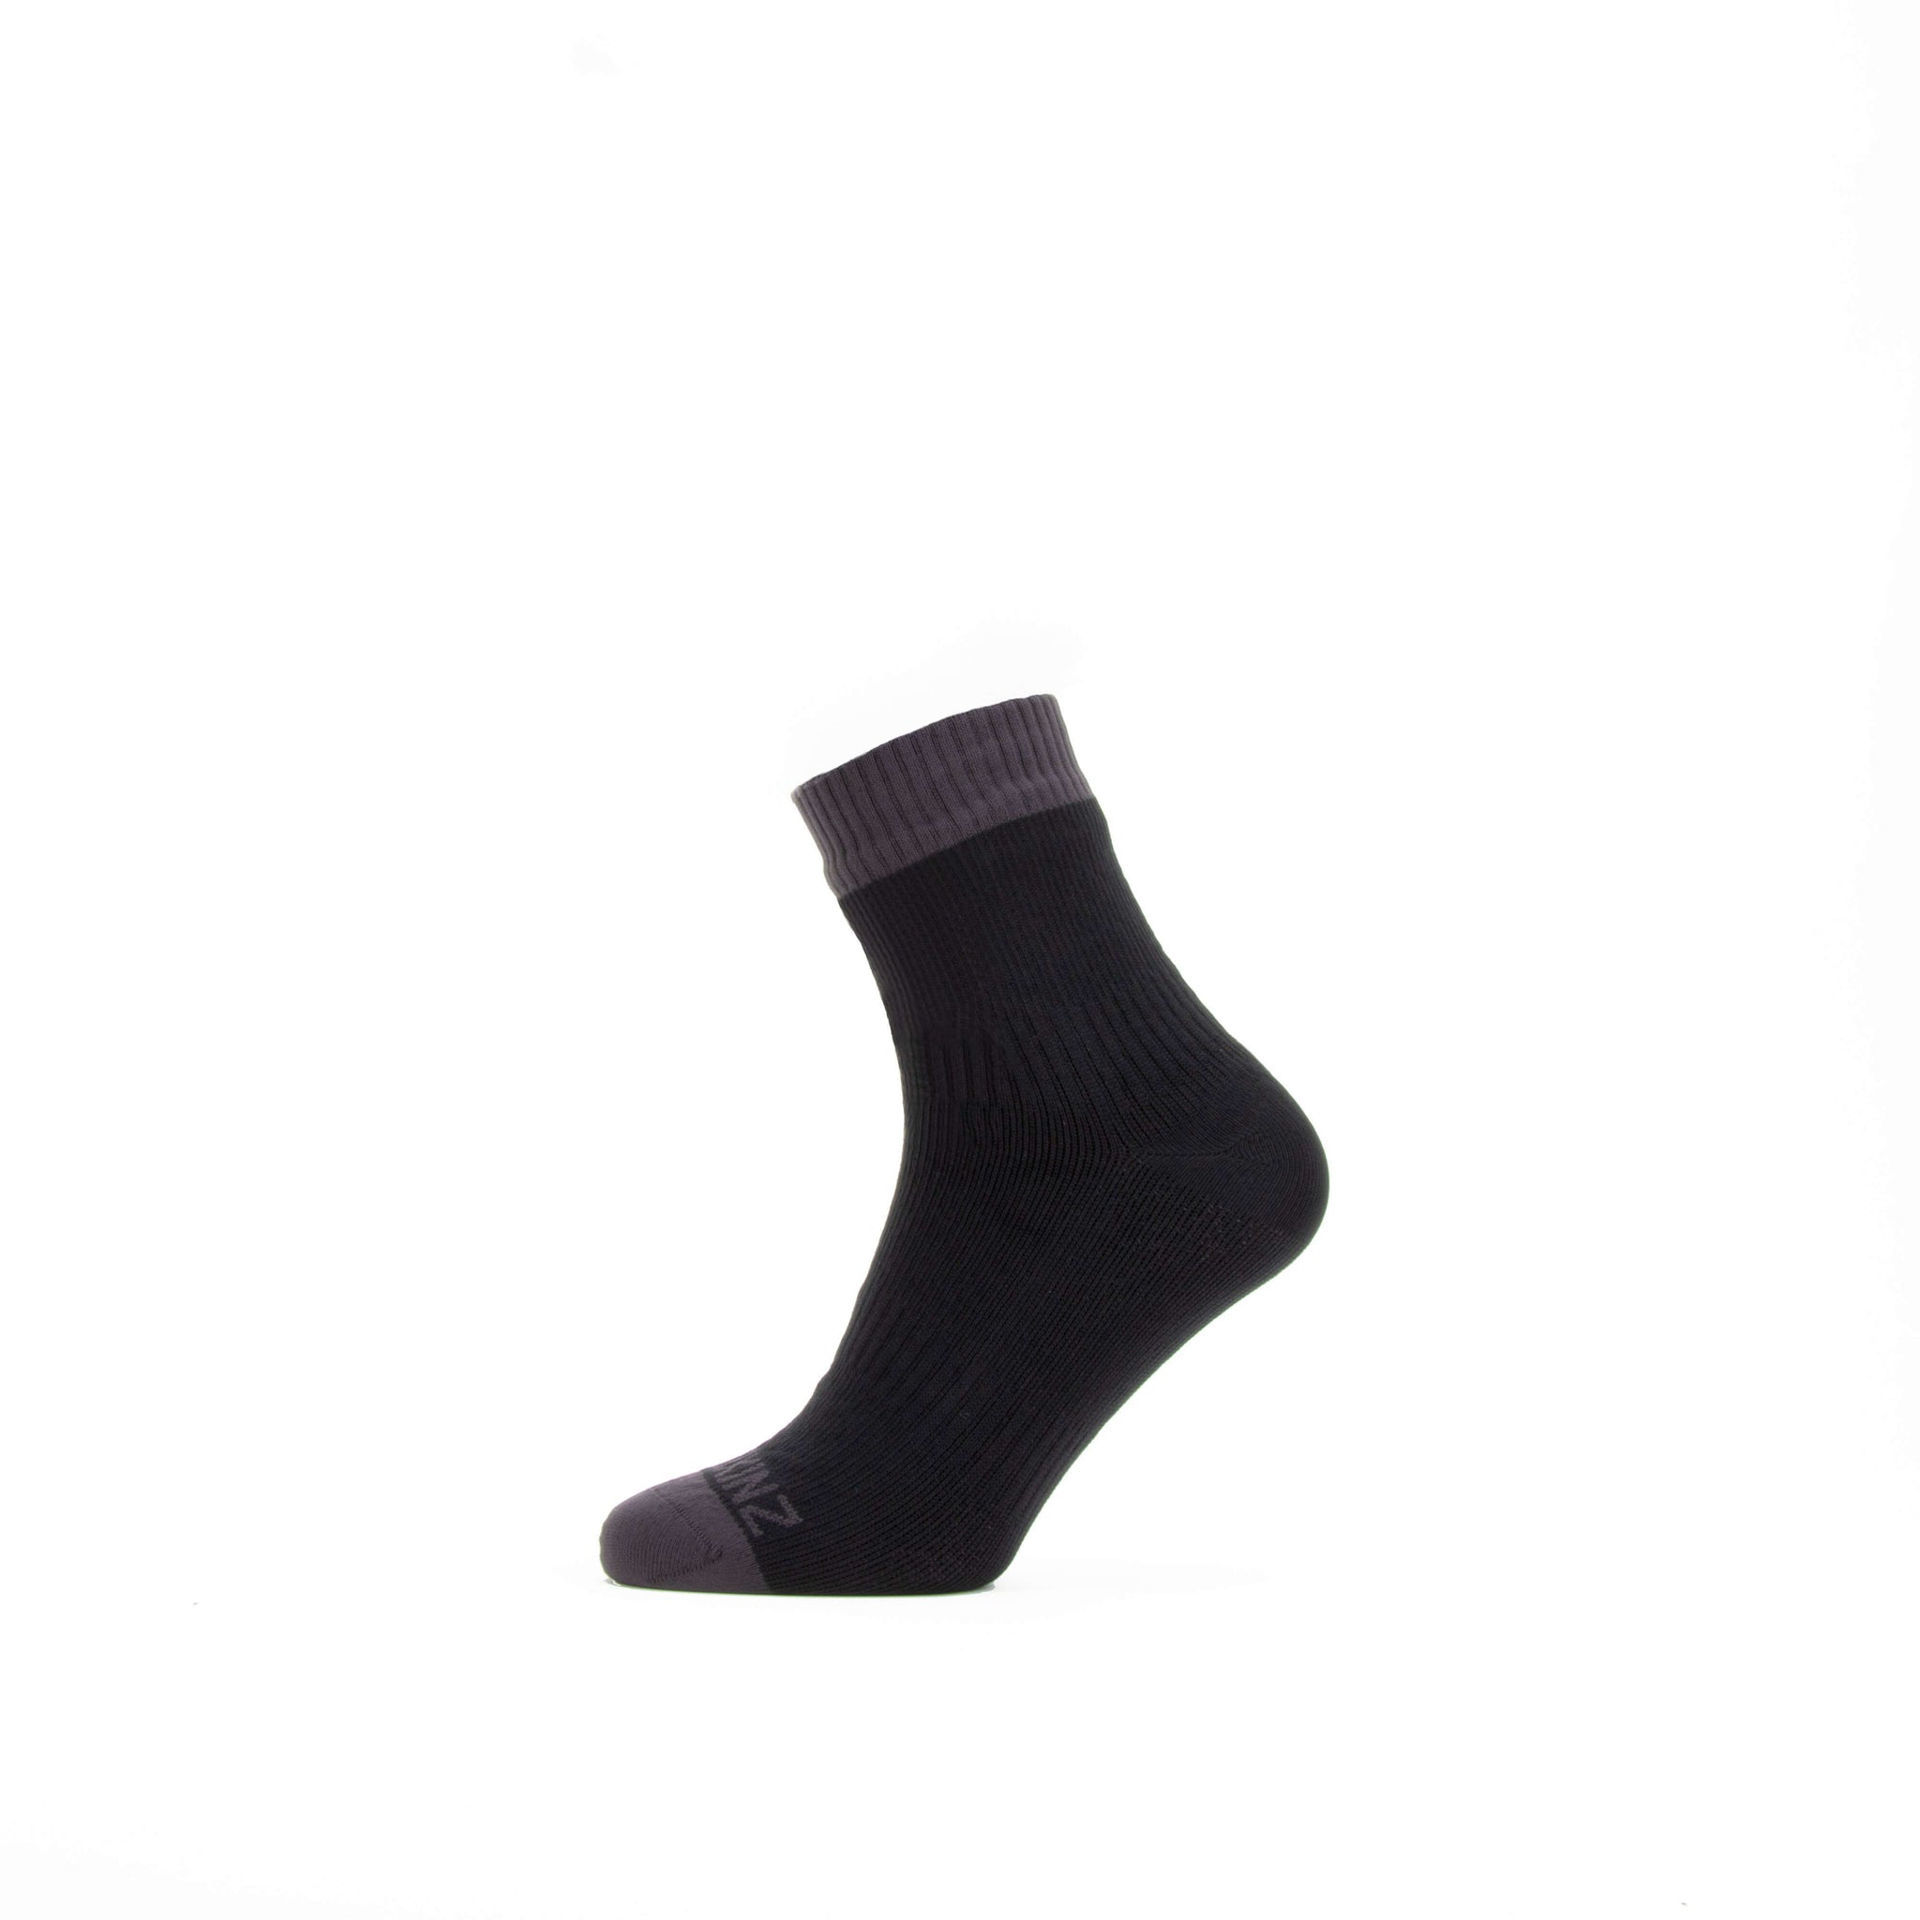 Sealskinz Waterproof Warm Weather Ankle Sock in Black / Grey